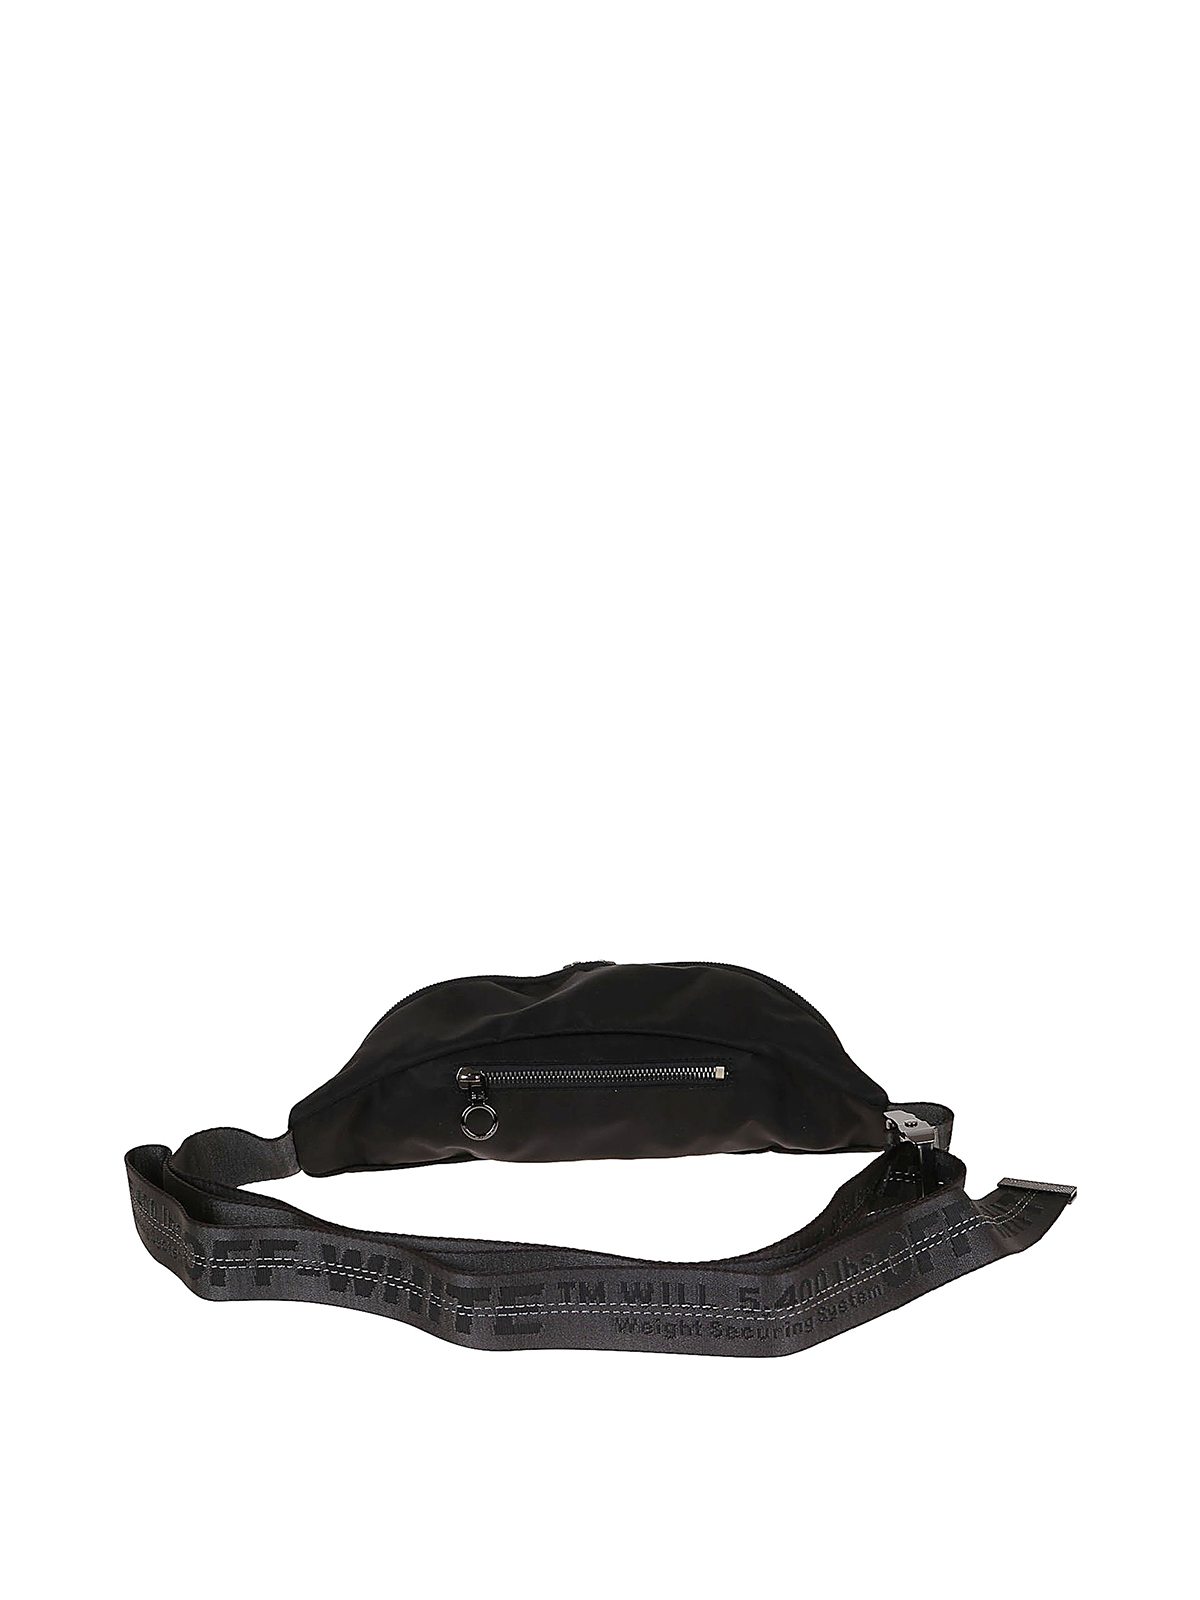 Off-White Off-White OW LOGO NYLON BASIC Belt bag - Stylemyle